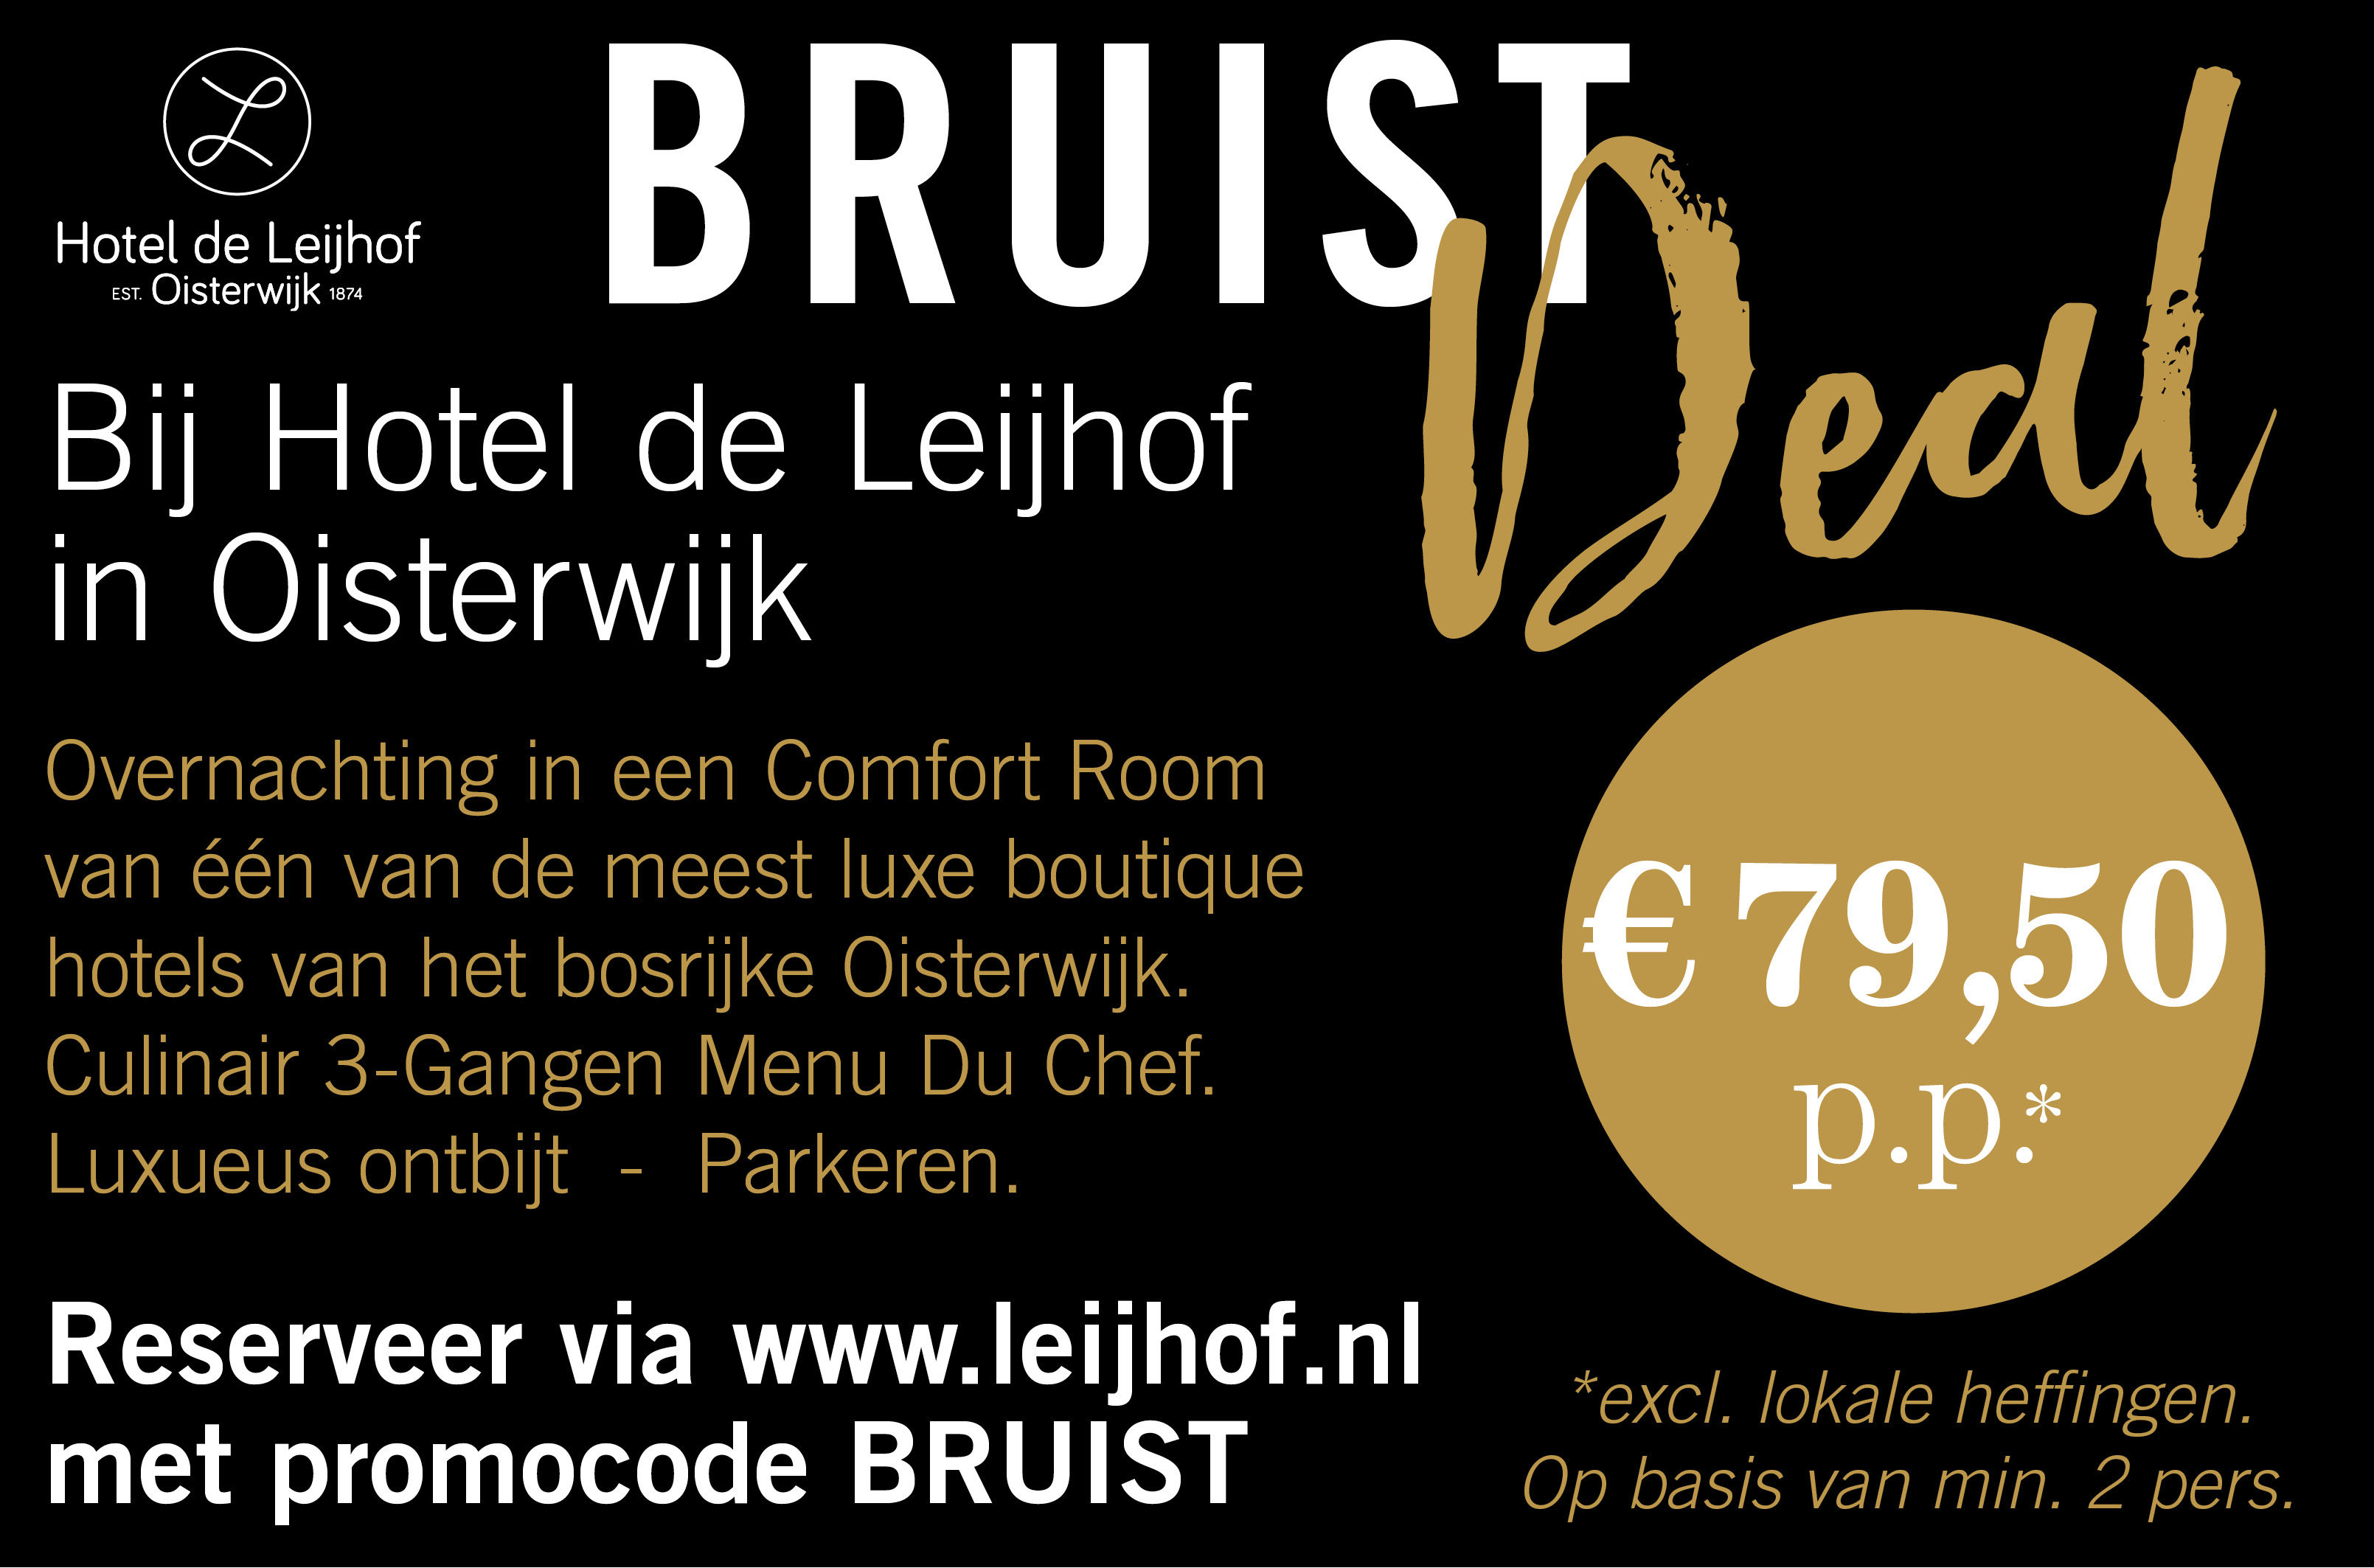 Verblijf in Hotel de Leijhof Oisterwijk met deze Bruist Deal